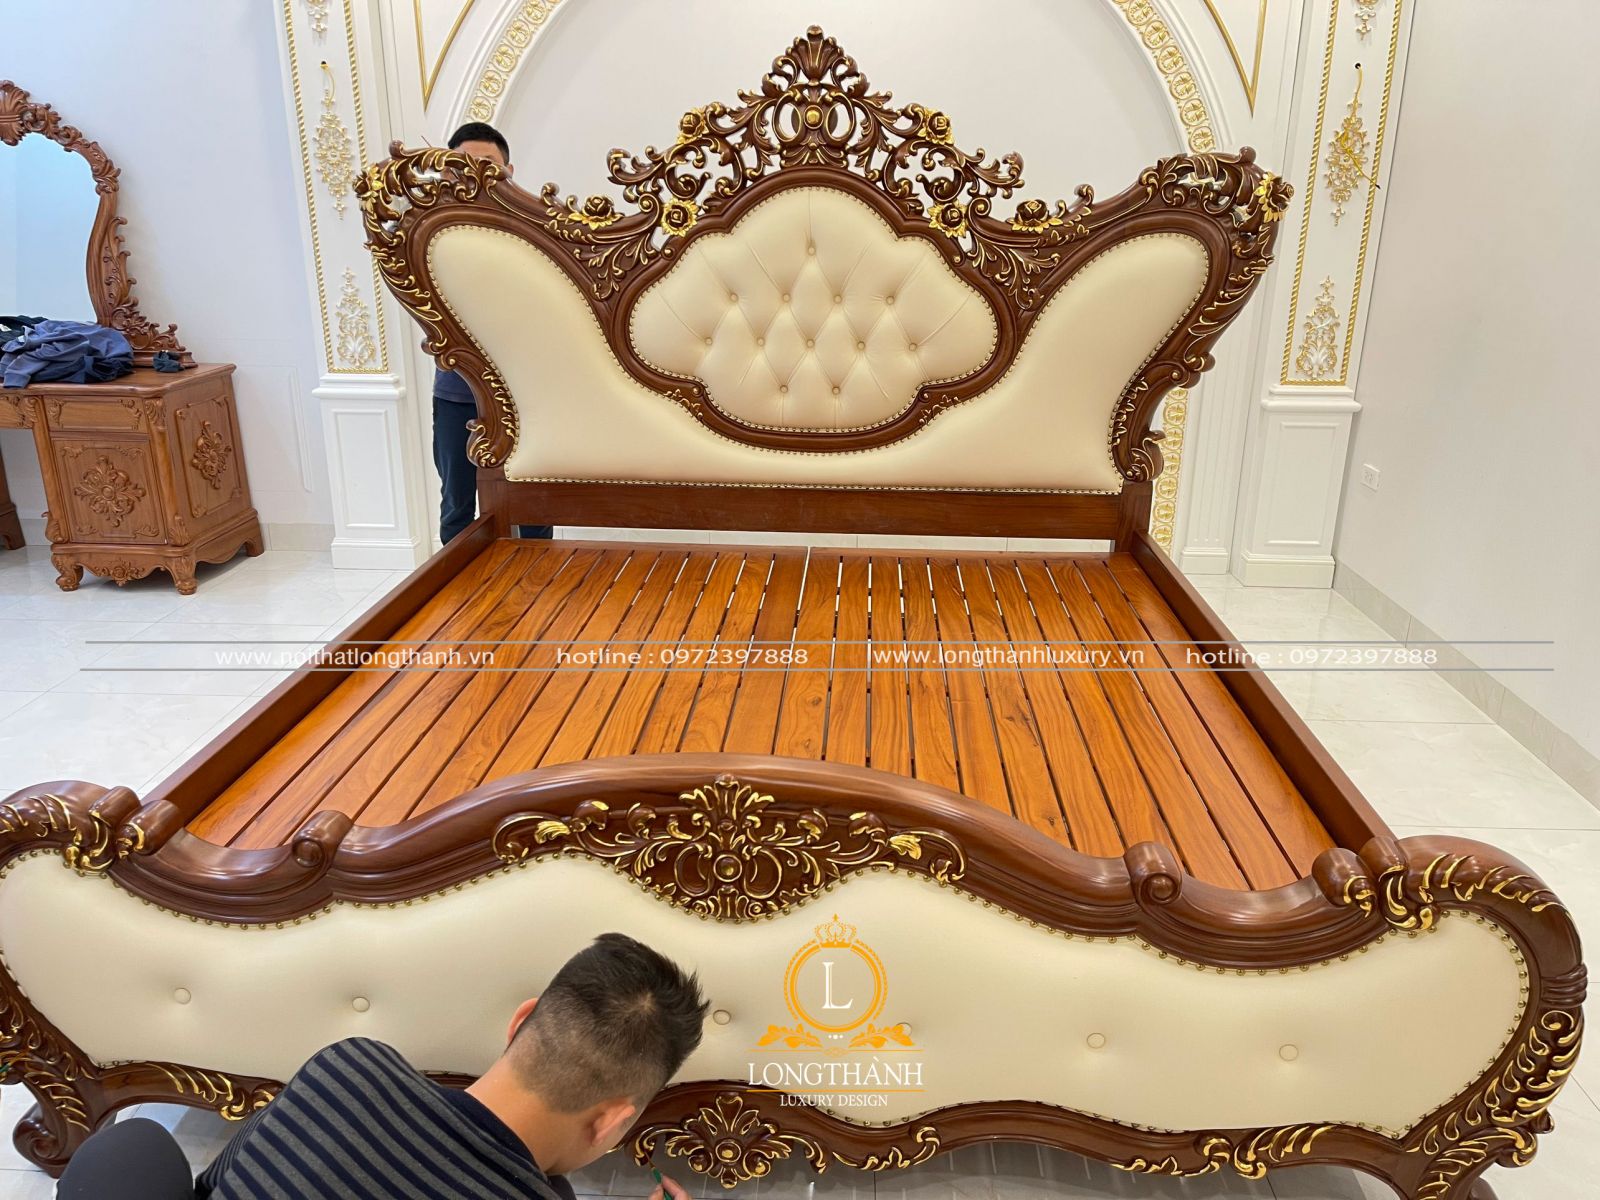 Sản phẩm giường ngủ tân cổ điển cao cấp được sử dụng công nghệ sơn Inchem